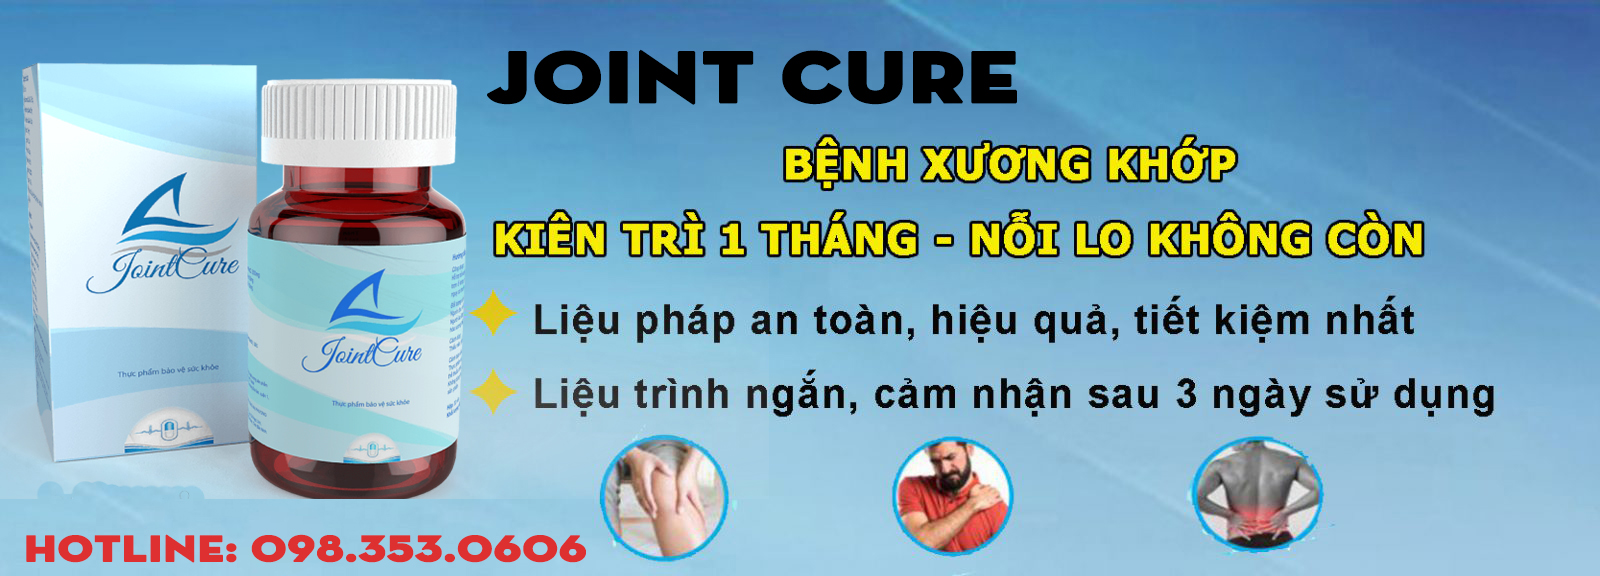 joint cure có tác dụng phụ không